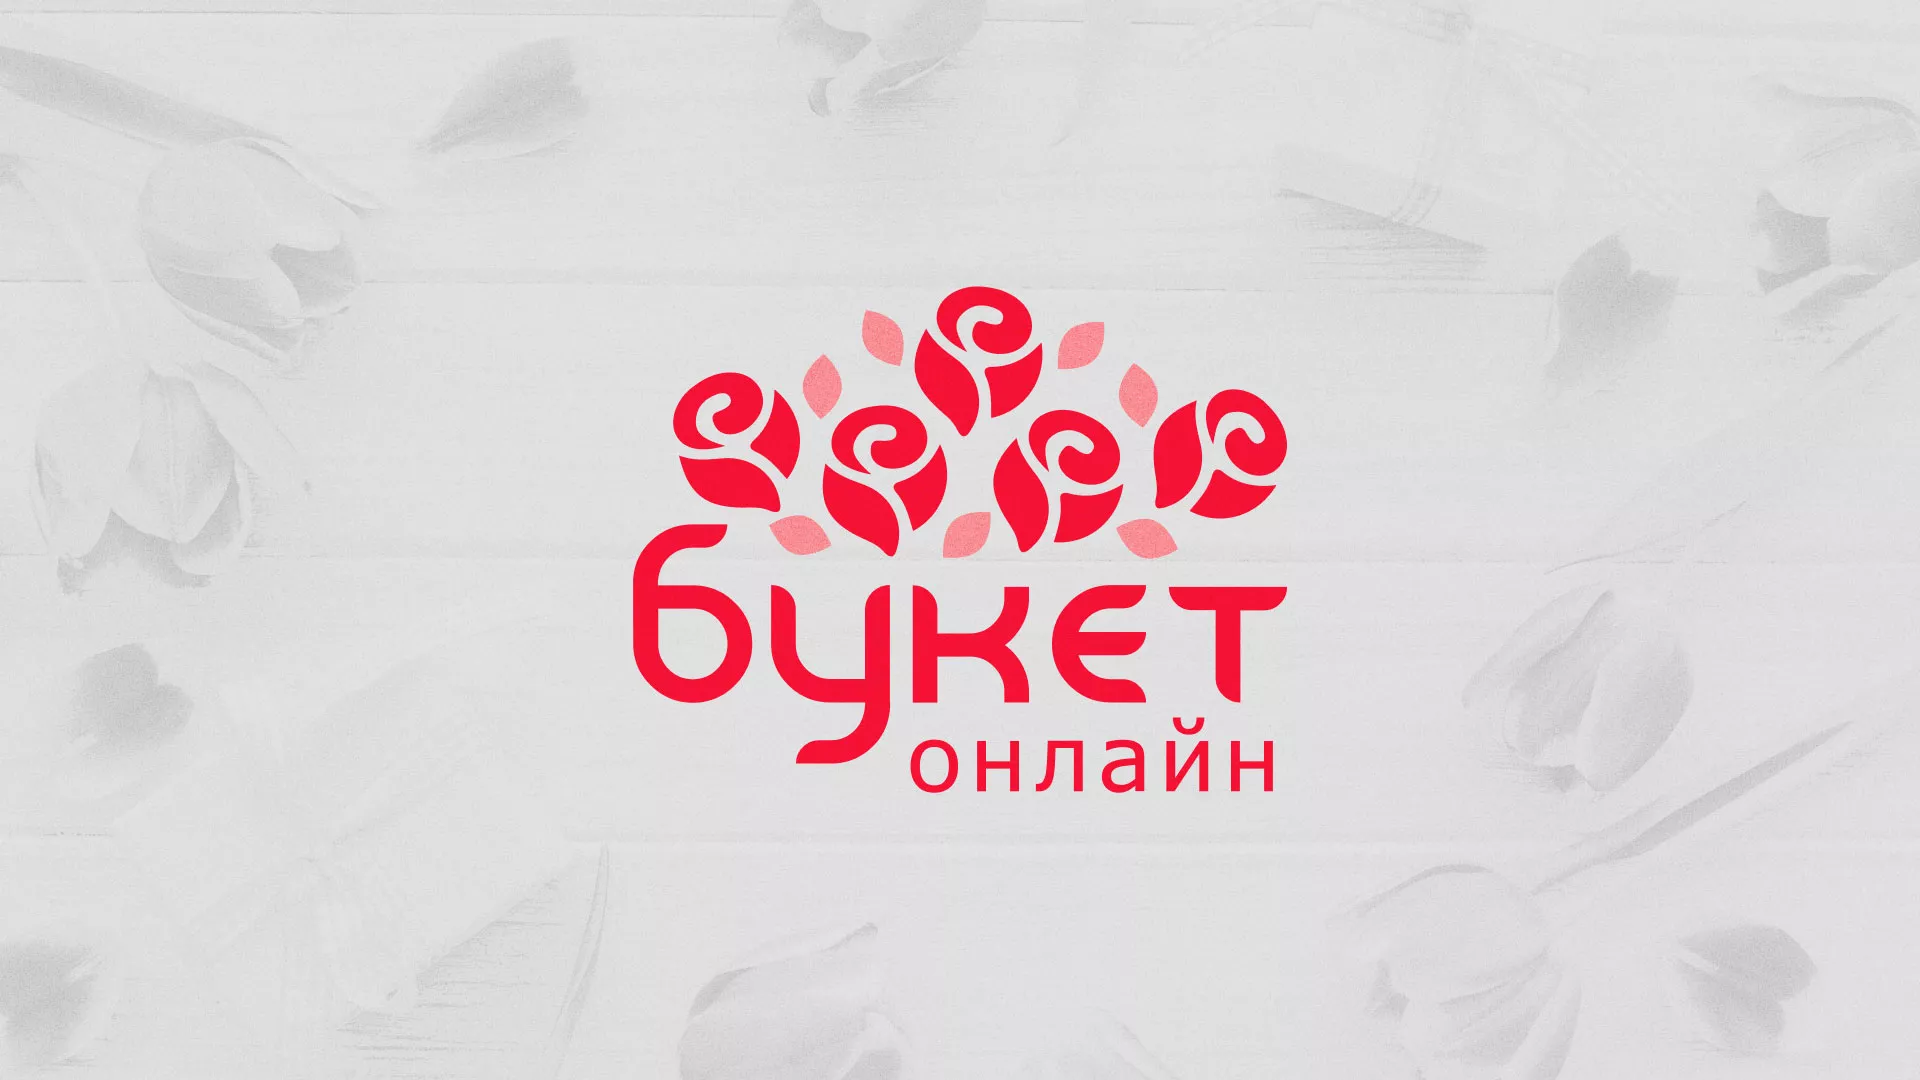 Создание интернет-магазина «Букет-онлайн» по цветам в Мышкине